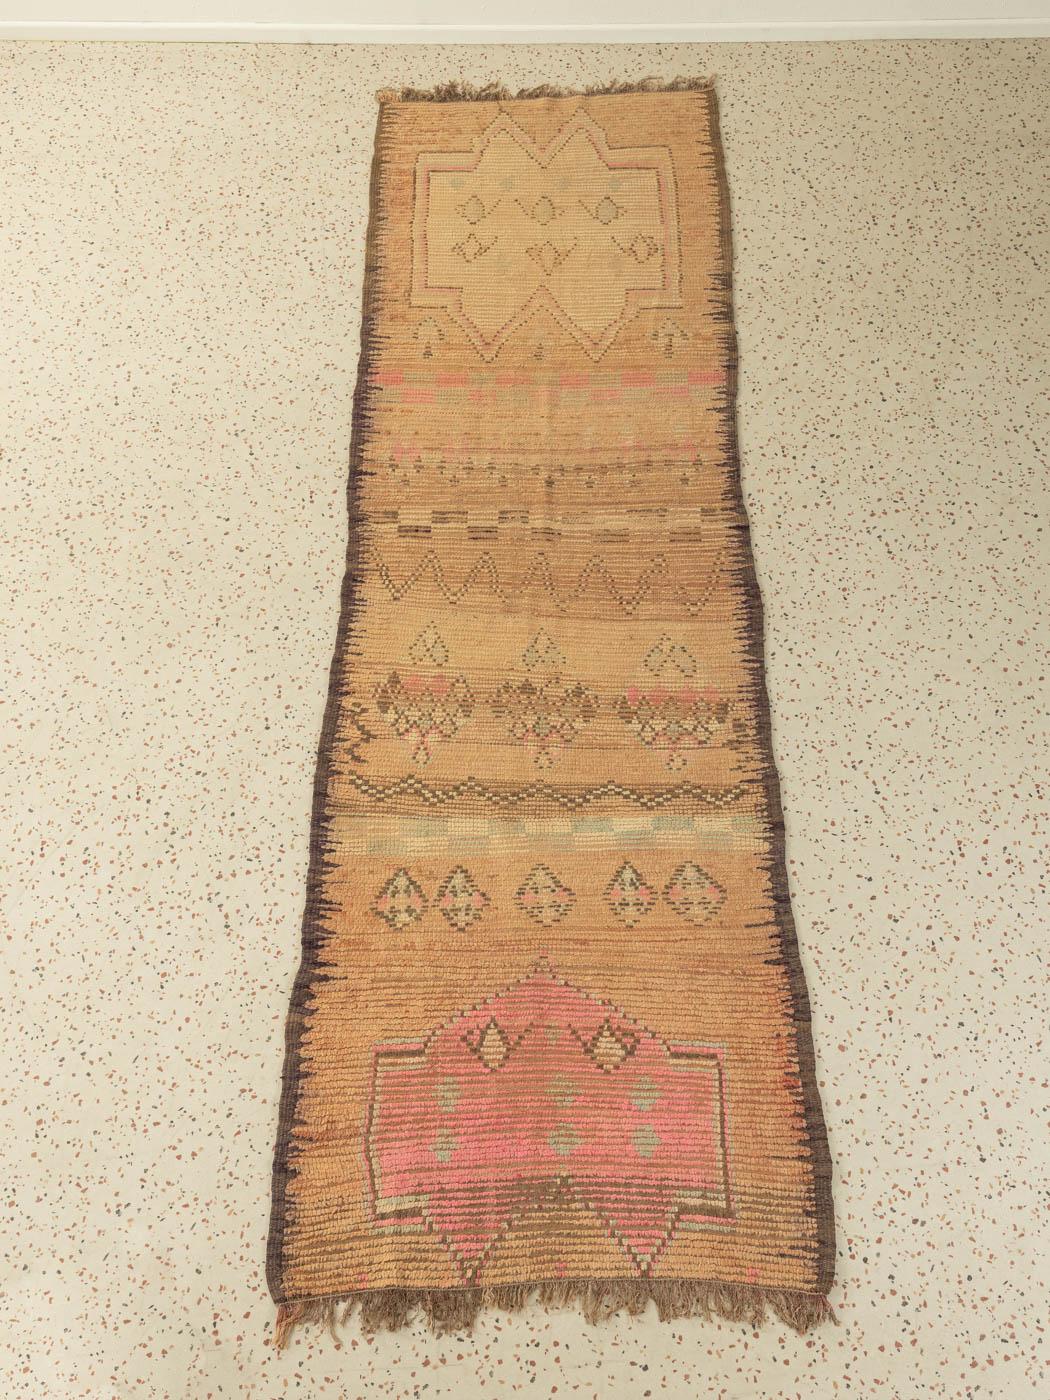 Moroccan Vintage Rehamna Berber Rug golden beige pink Runner traditional pattern For Sale